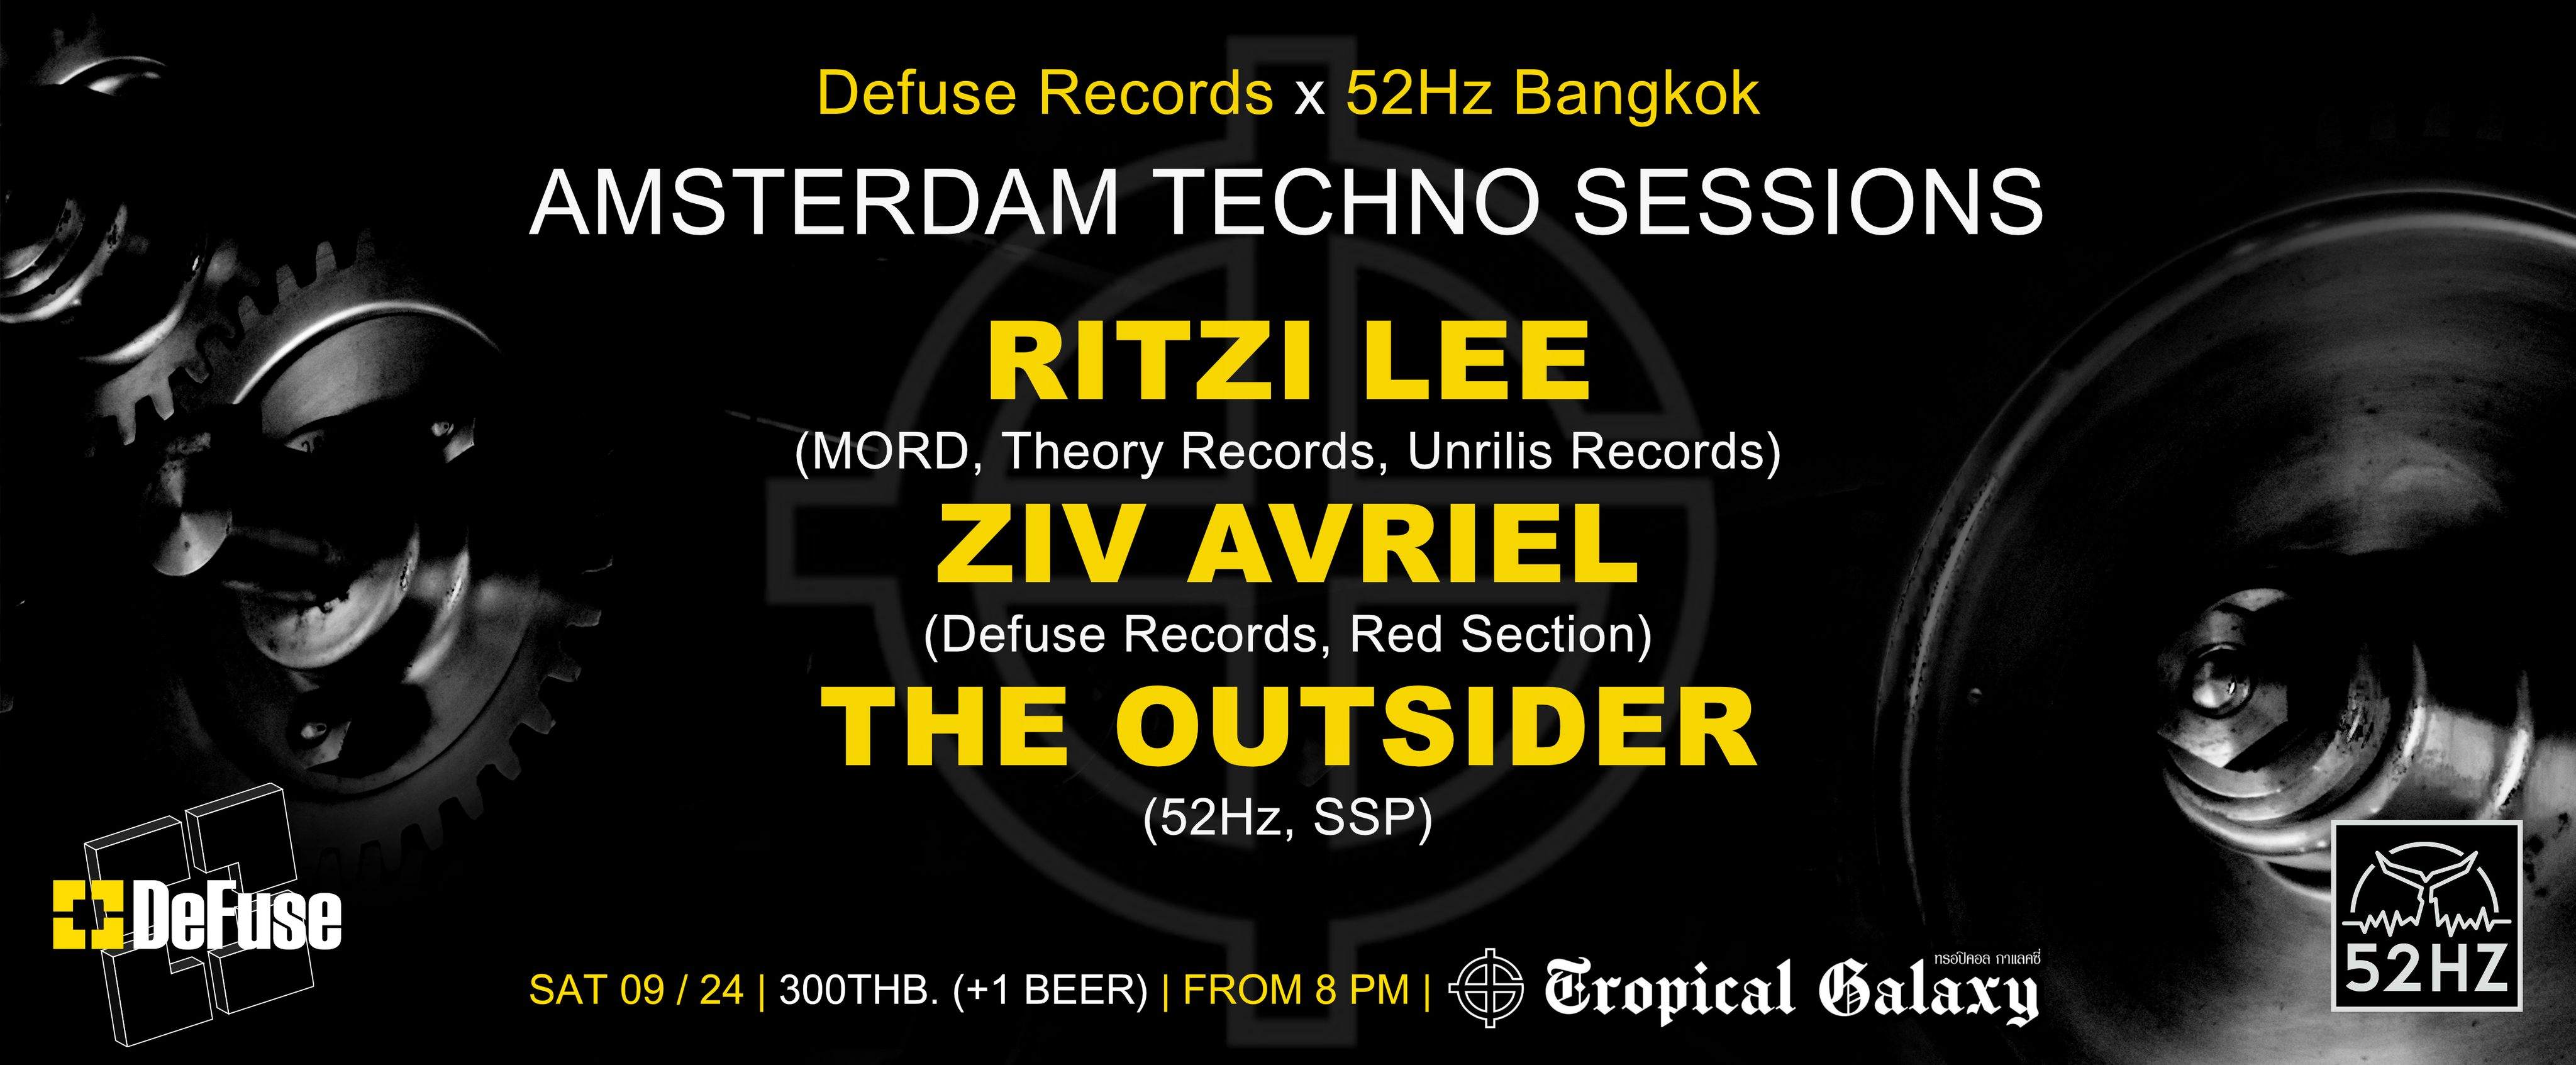 Amsterdam Techno Sessions w/ Ritzi Lee - フライヤー表